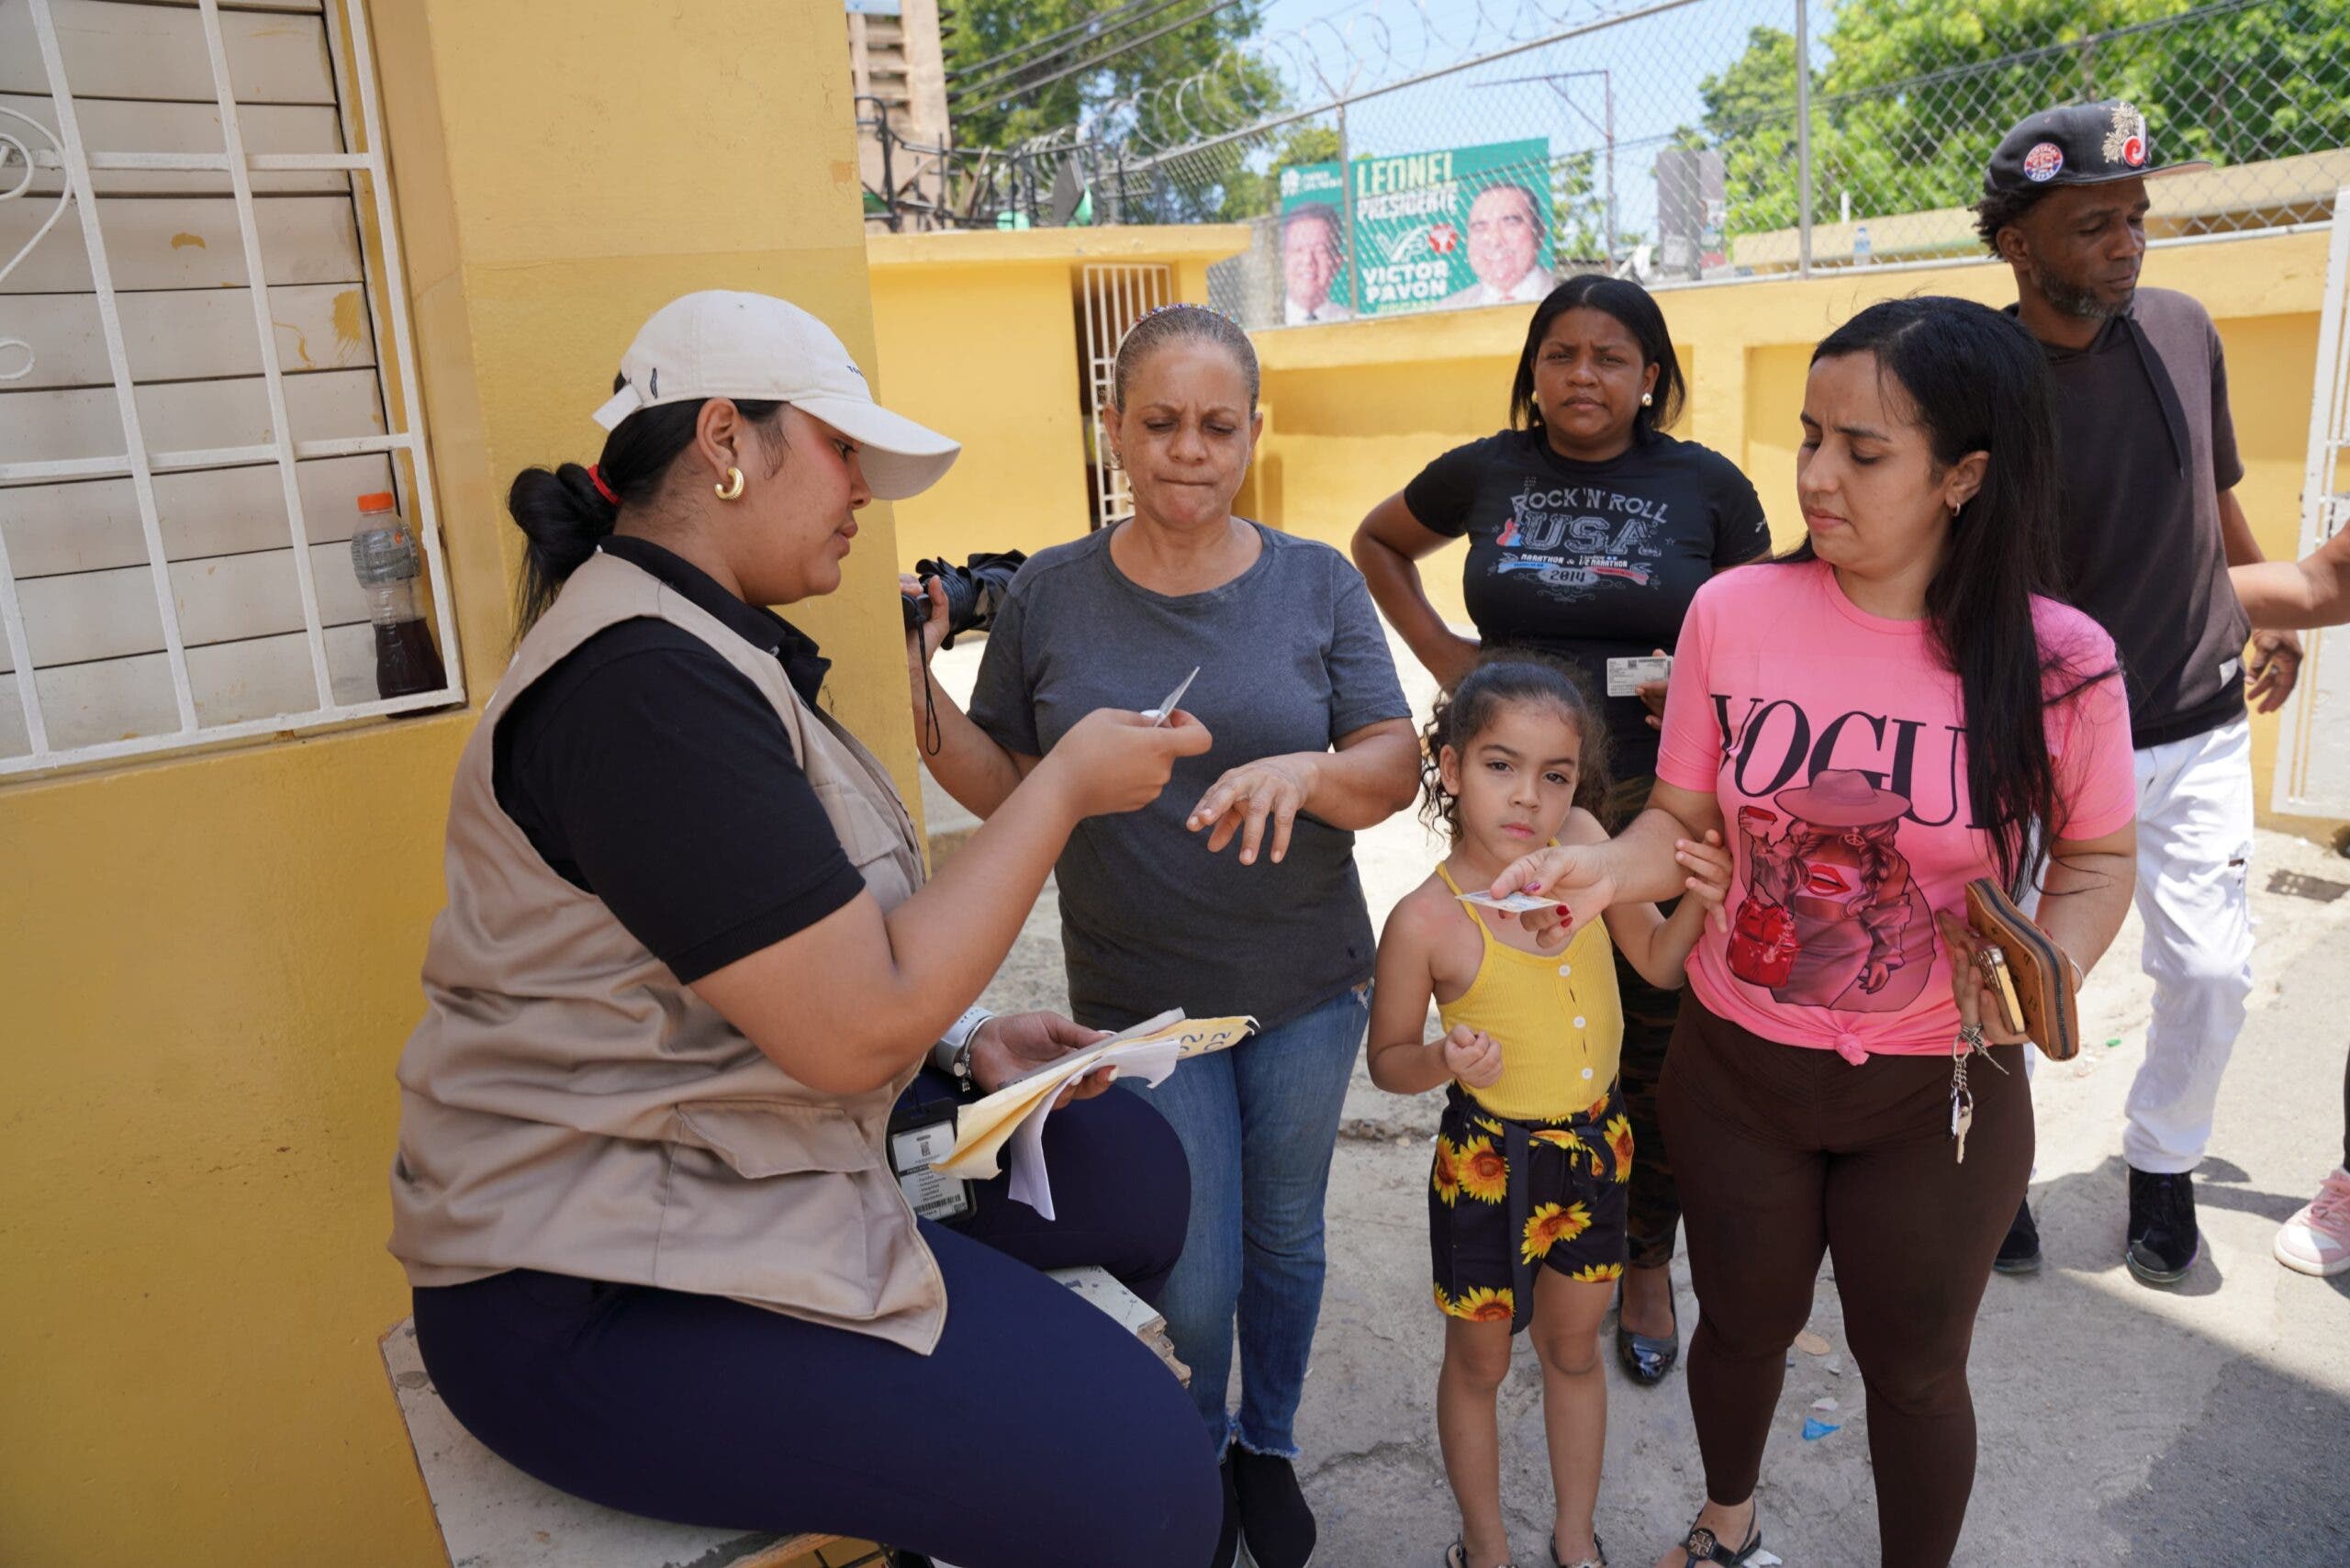 Tranquilidad reina en los comicios dominicanos, sin incidentes importantes a media jornada